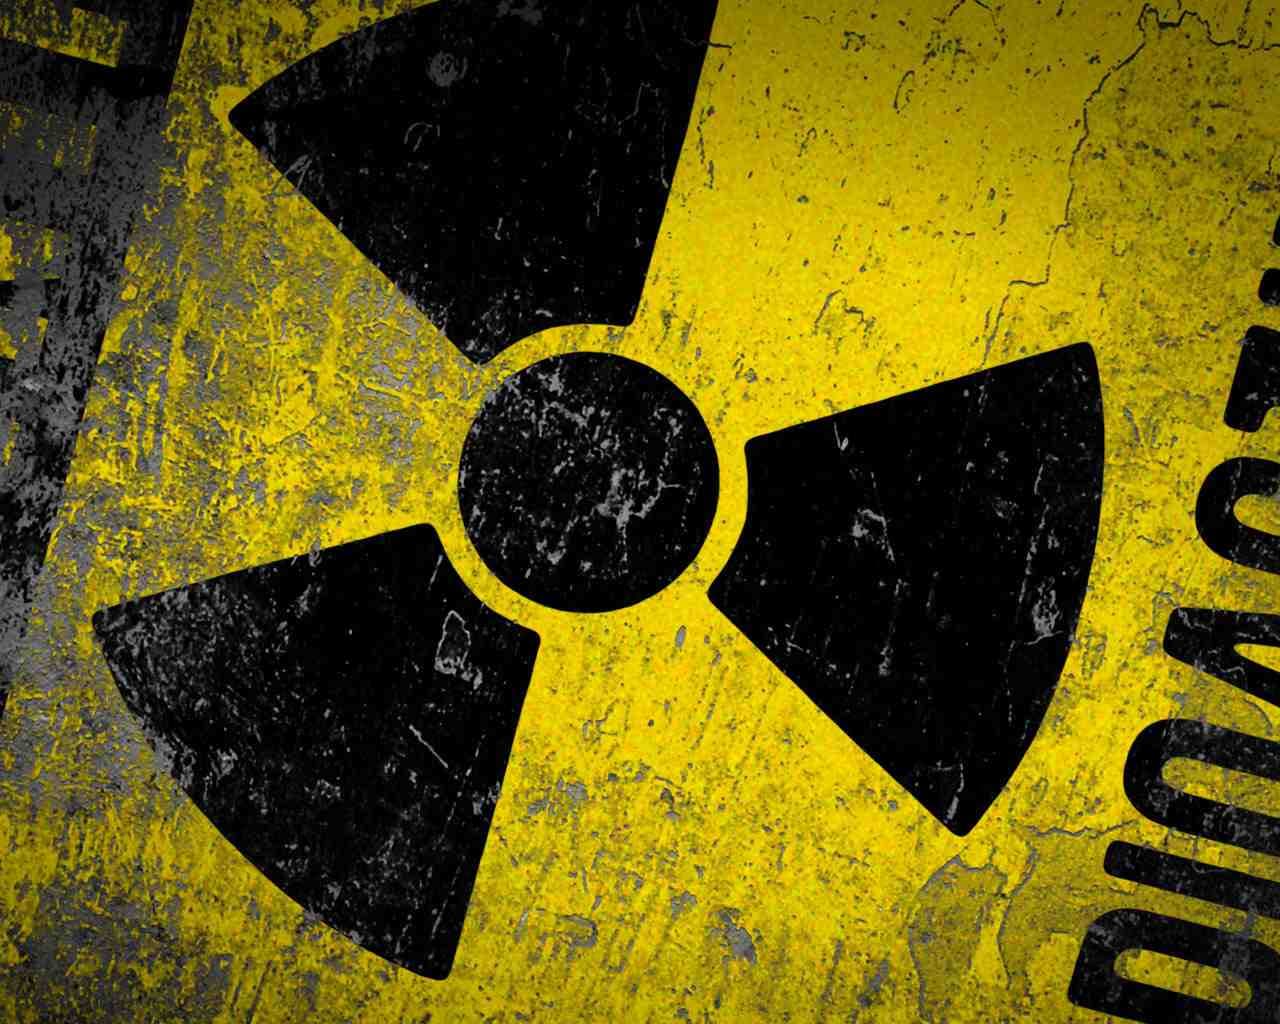 Radioaktív anyagot loptak Irakban, ami akár az Iszlám Állam kezébe is kerülhet